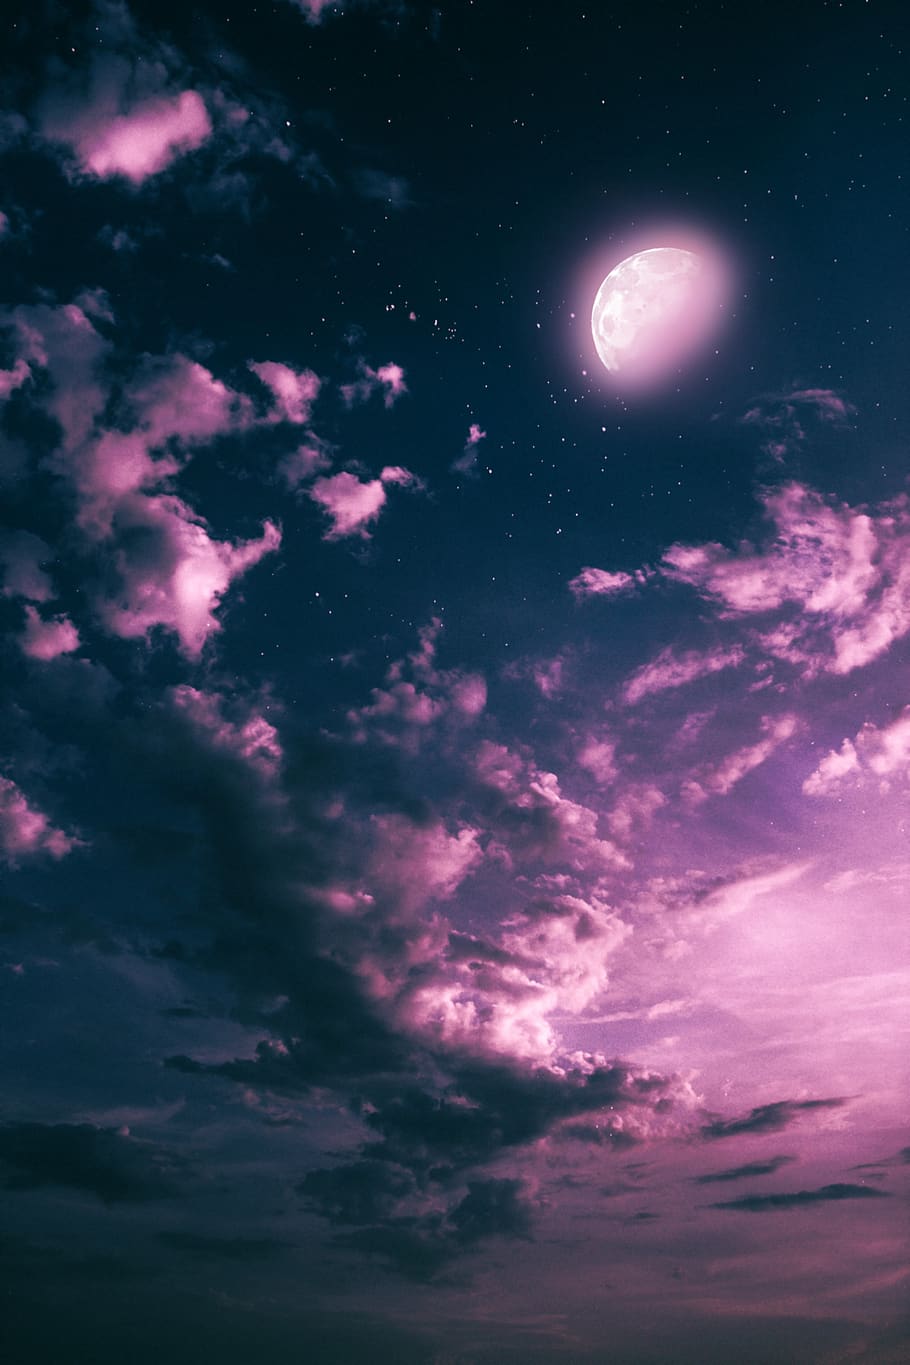 bulan, malam, awan, langit, photoshop, fantasi, merah muda, awan - langit, ruang, astronomi